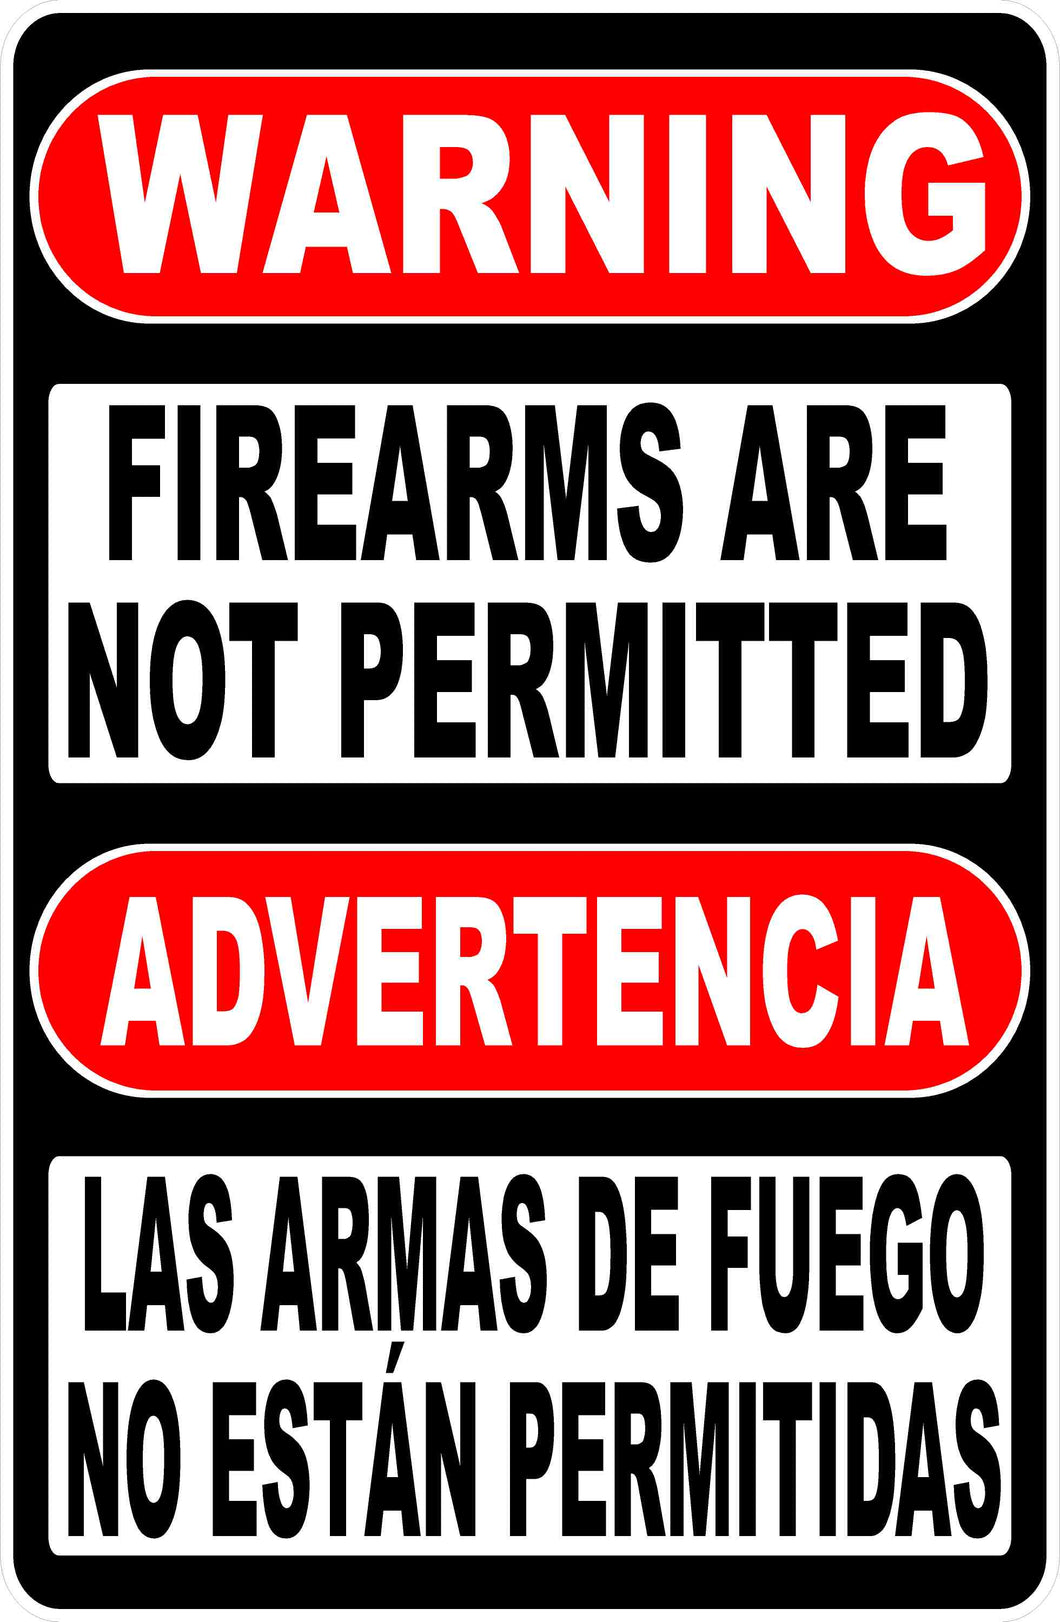 Bilingual Gun Safety Sign